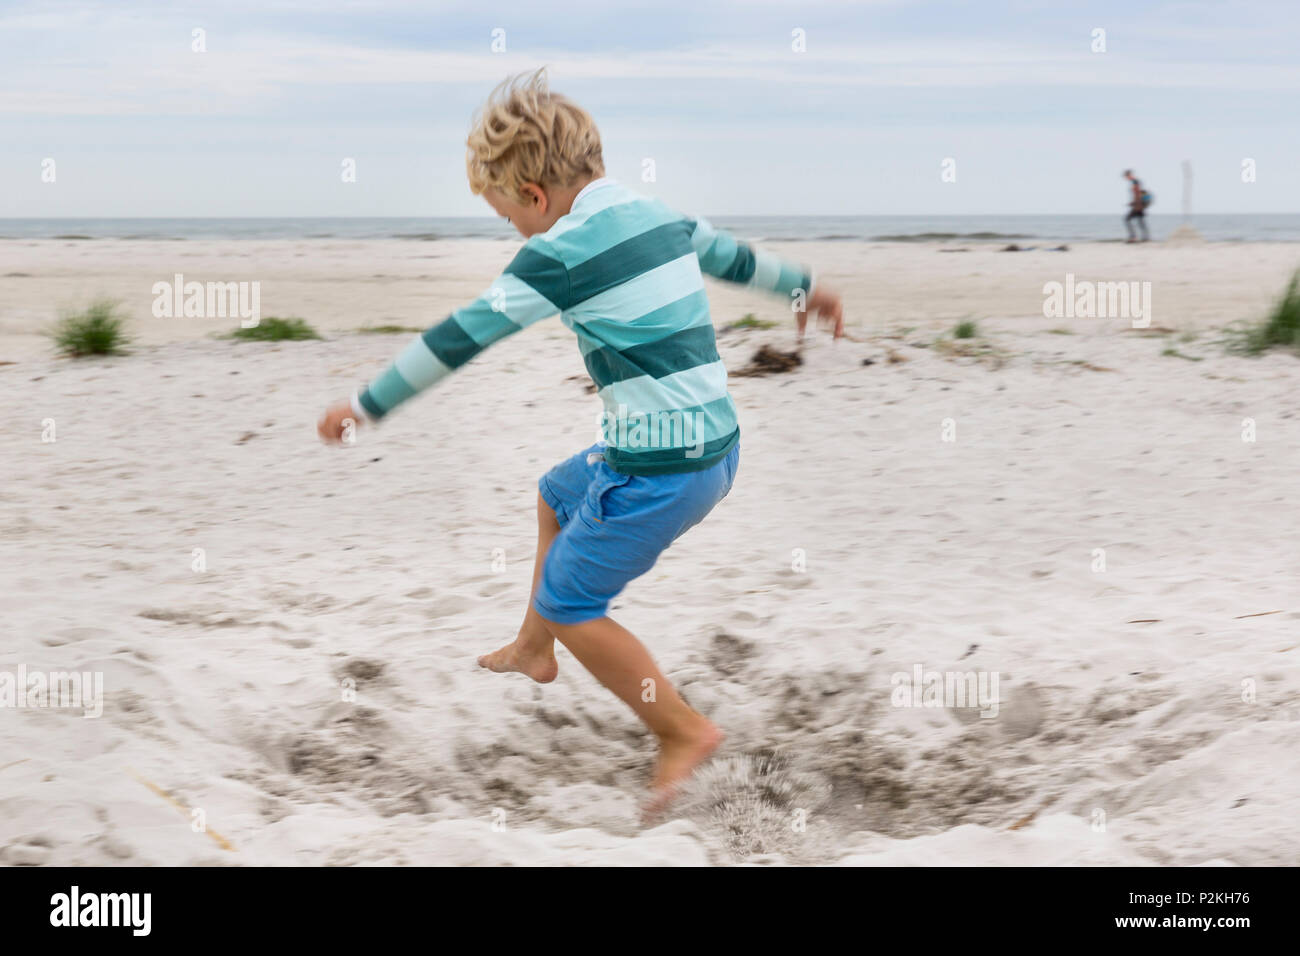 Niño corriendo en la playa, de 5 años de edad, playa de ensueño entre Strandmarken und Dueodde, playa de arena, el verano, el mar Báltico, Bornholm, Foto de stock